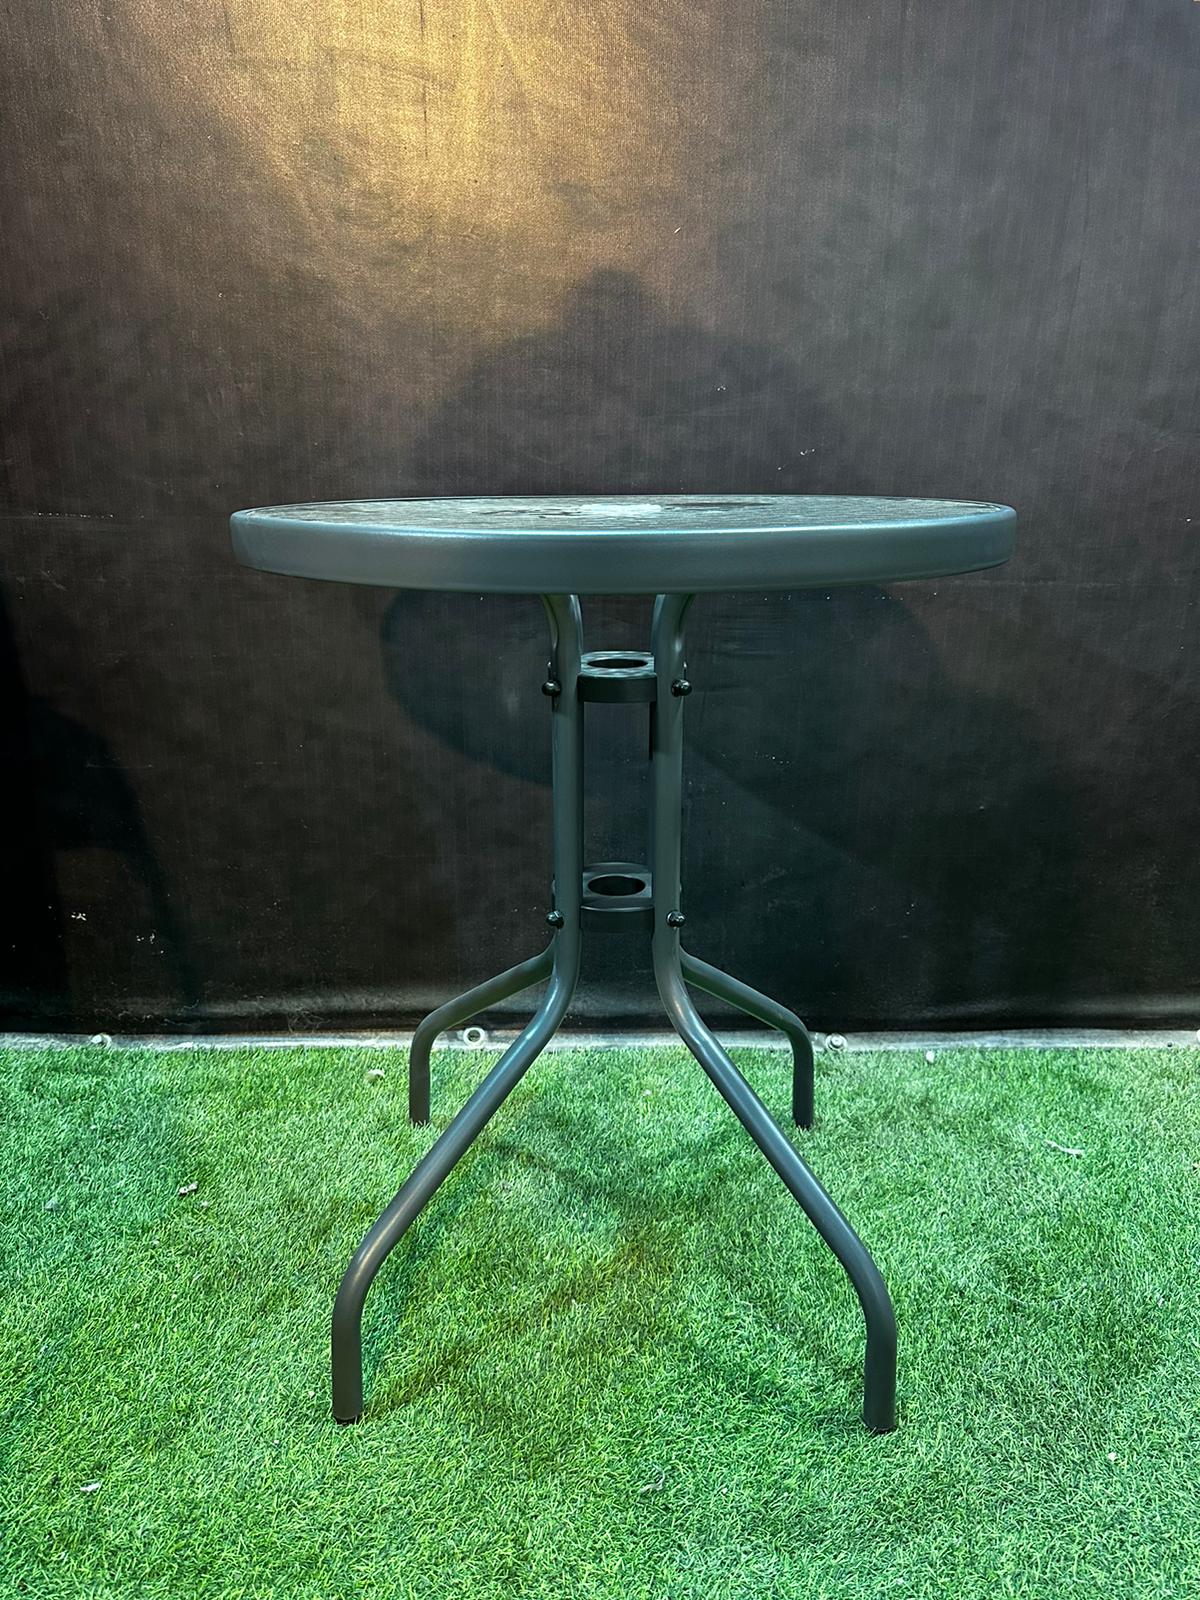 שולחן ביסטרו עגול 60 ס”מ זכוכית – דגם ביסטרו